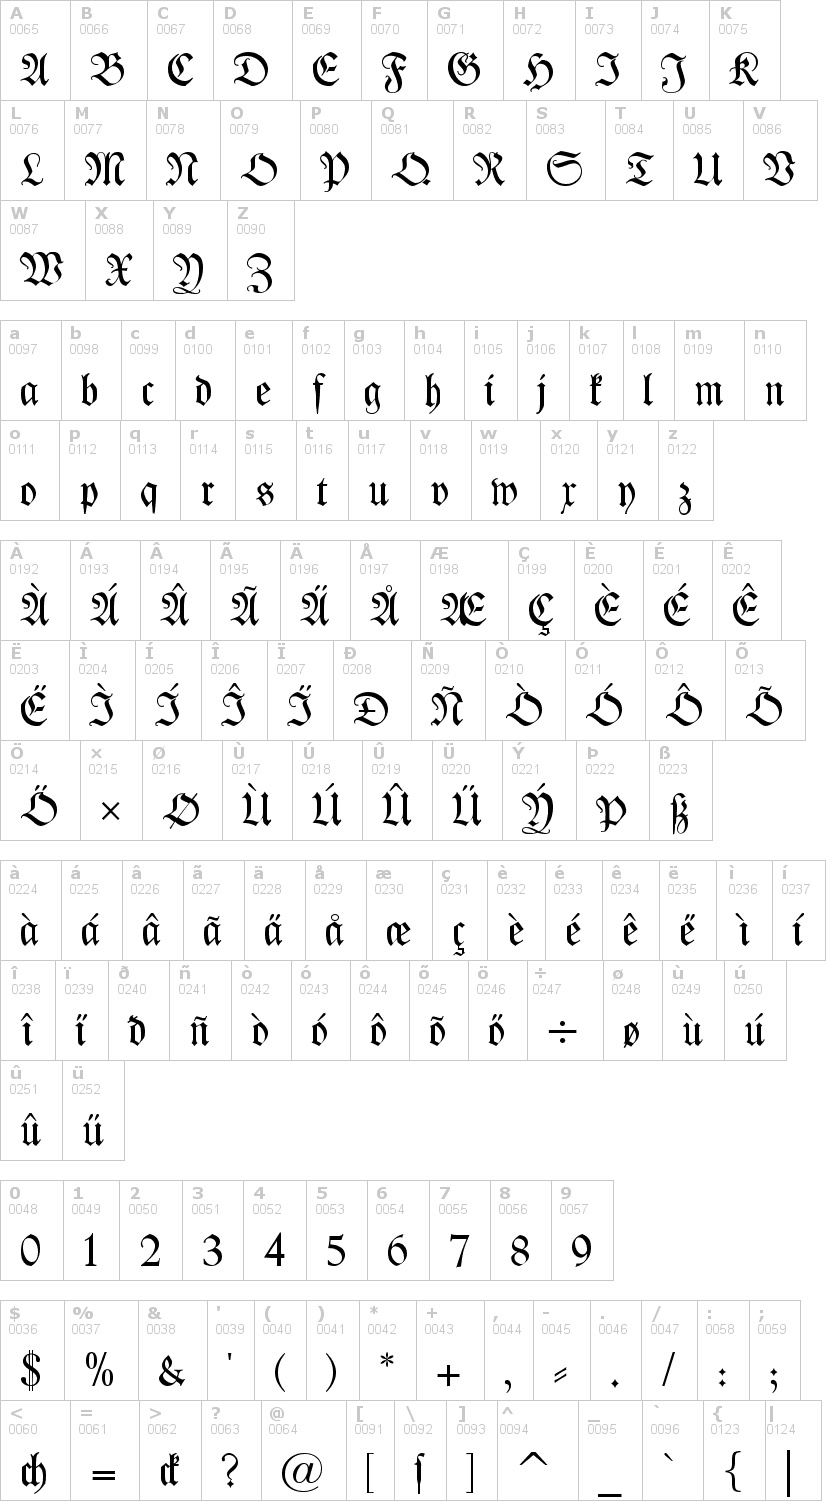 Lettere dell'alfabeto del font kleist-fraktur con le quali è possibile realizzare adesivi prespaziati